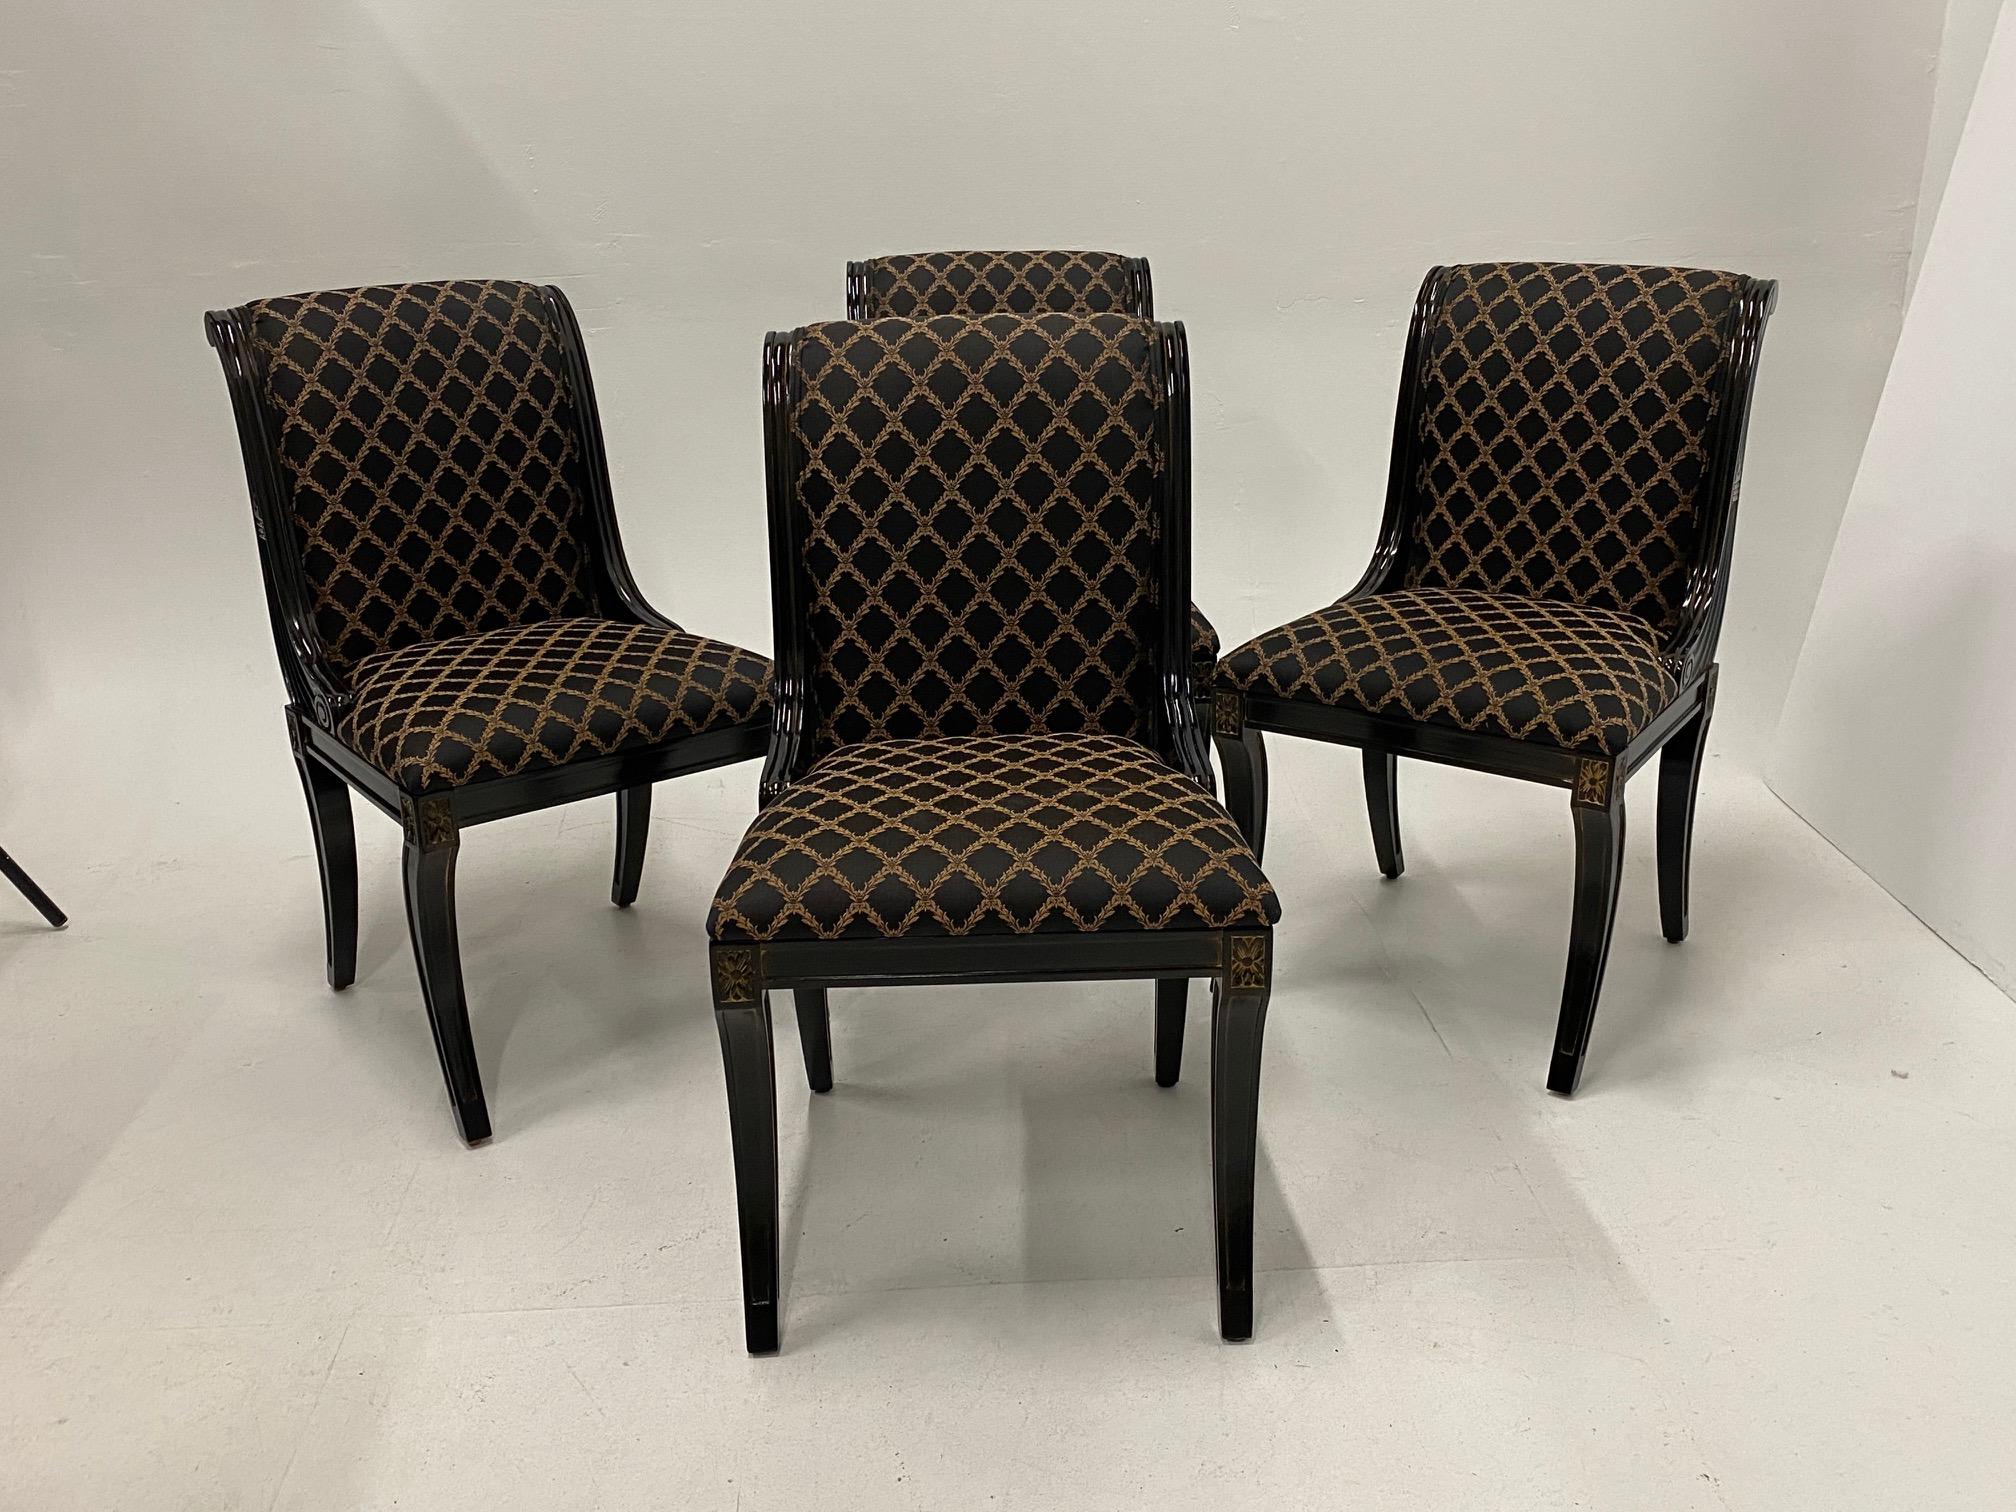 Glamorous Set of 4 Hollywood Regency Ebonized & Gilt Decorated Dining Chairs 2